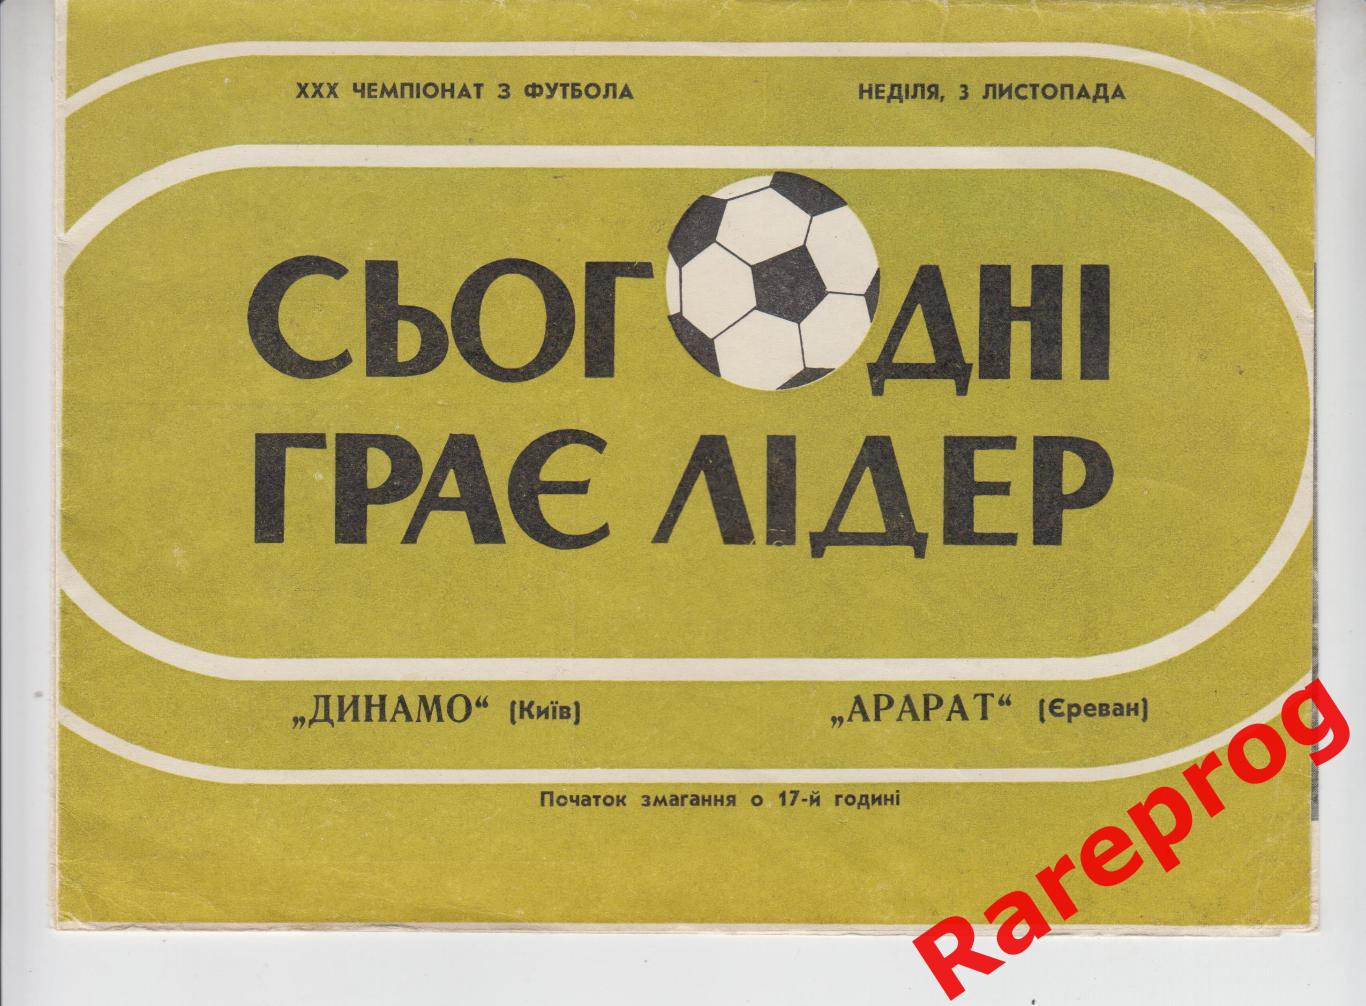 Динамо Киев - Арарат Ереван - 1968